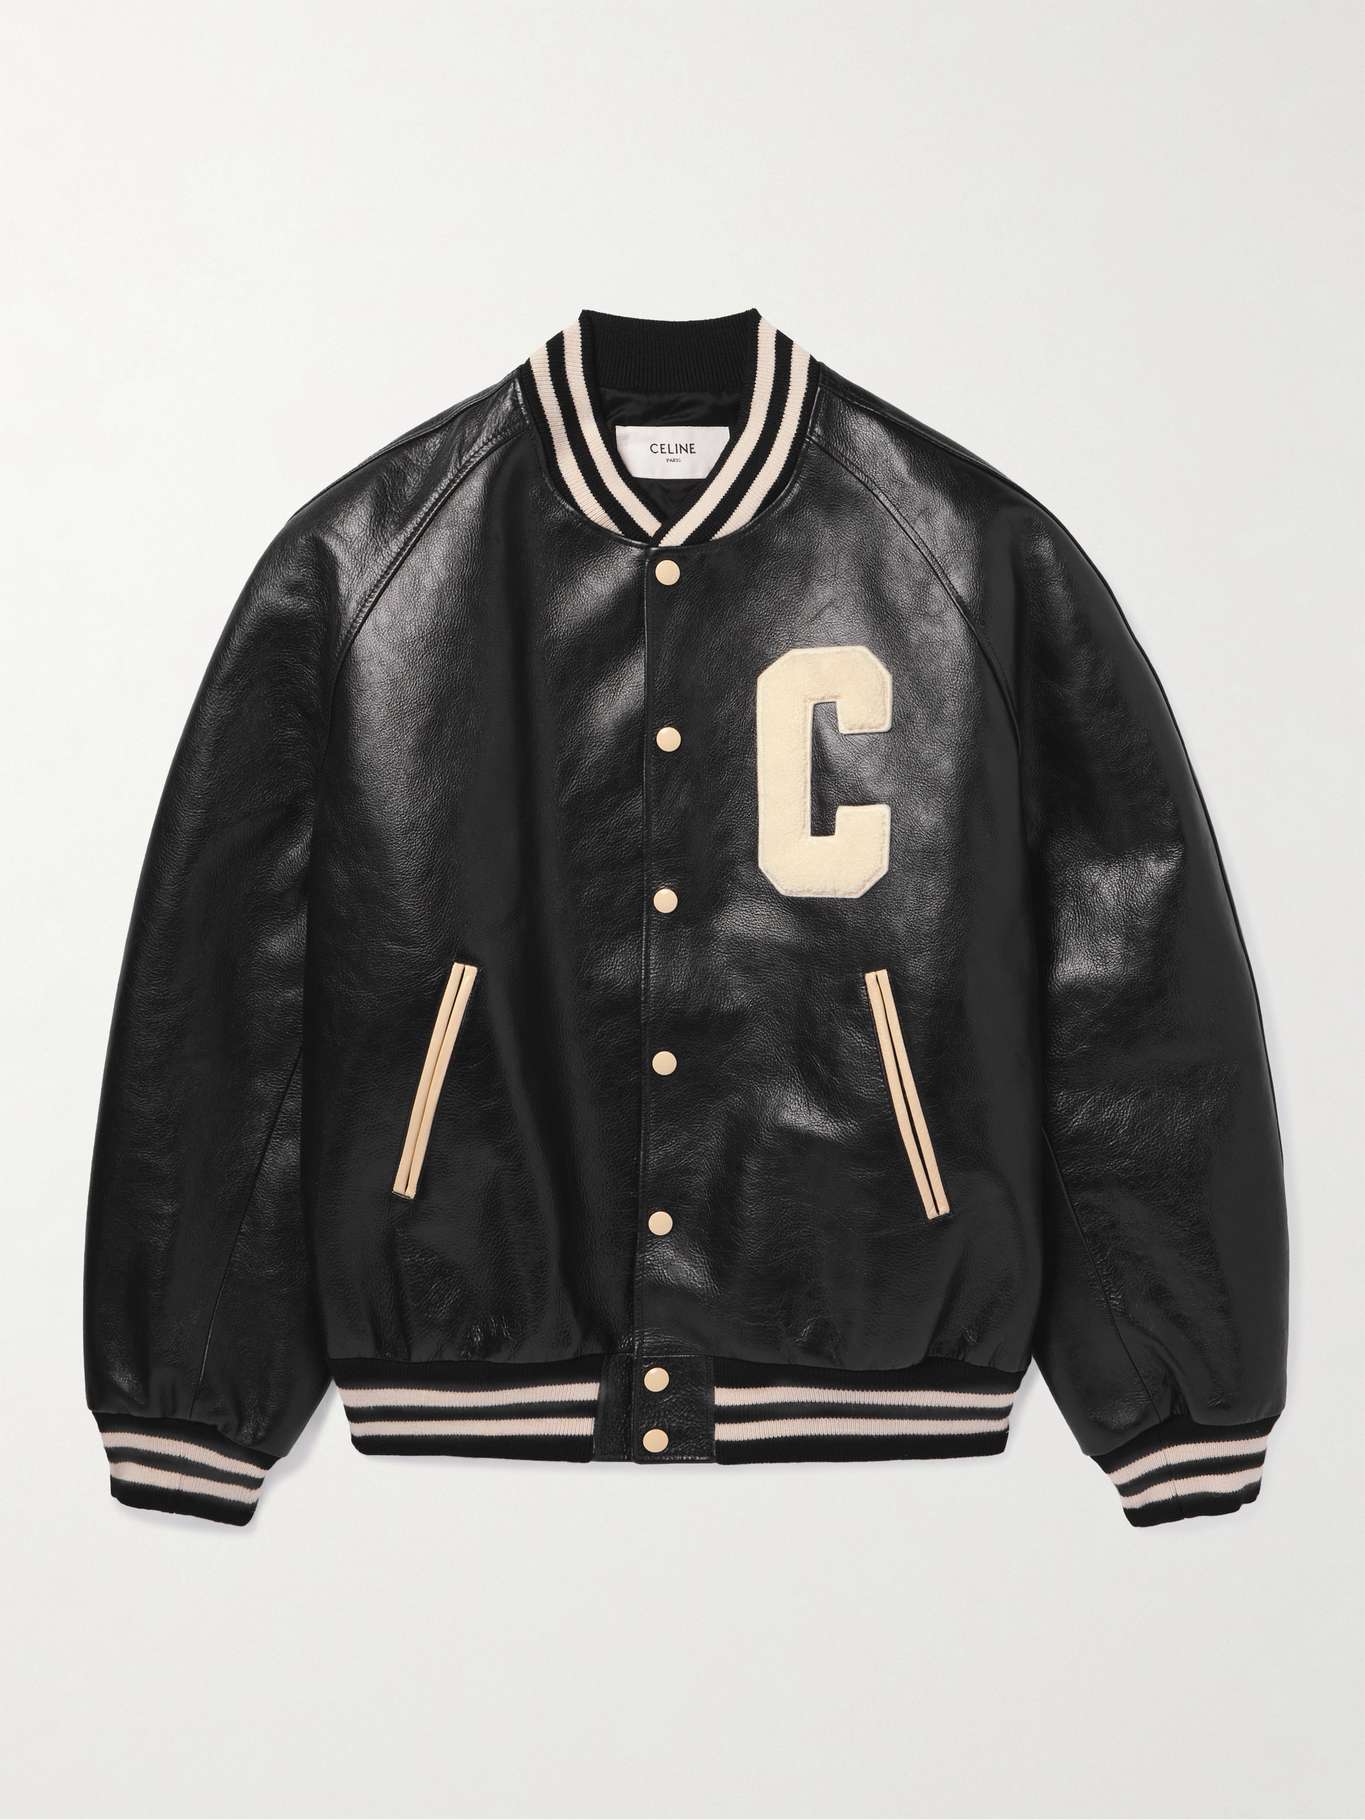 CELINE HOMME Teddy Logo-Appliquéd Leather Bomber Jacket for Men | MR PORTER